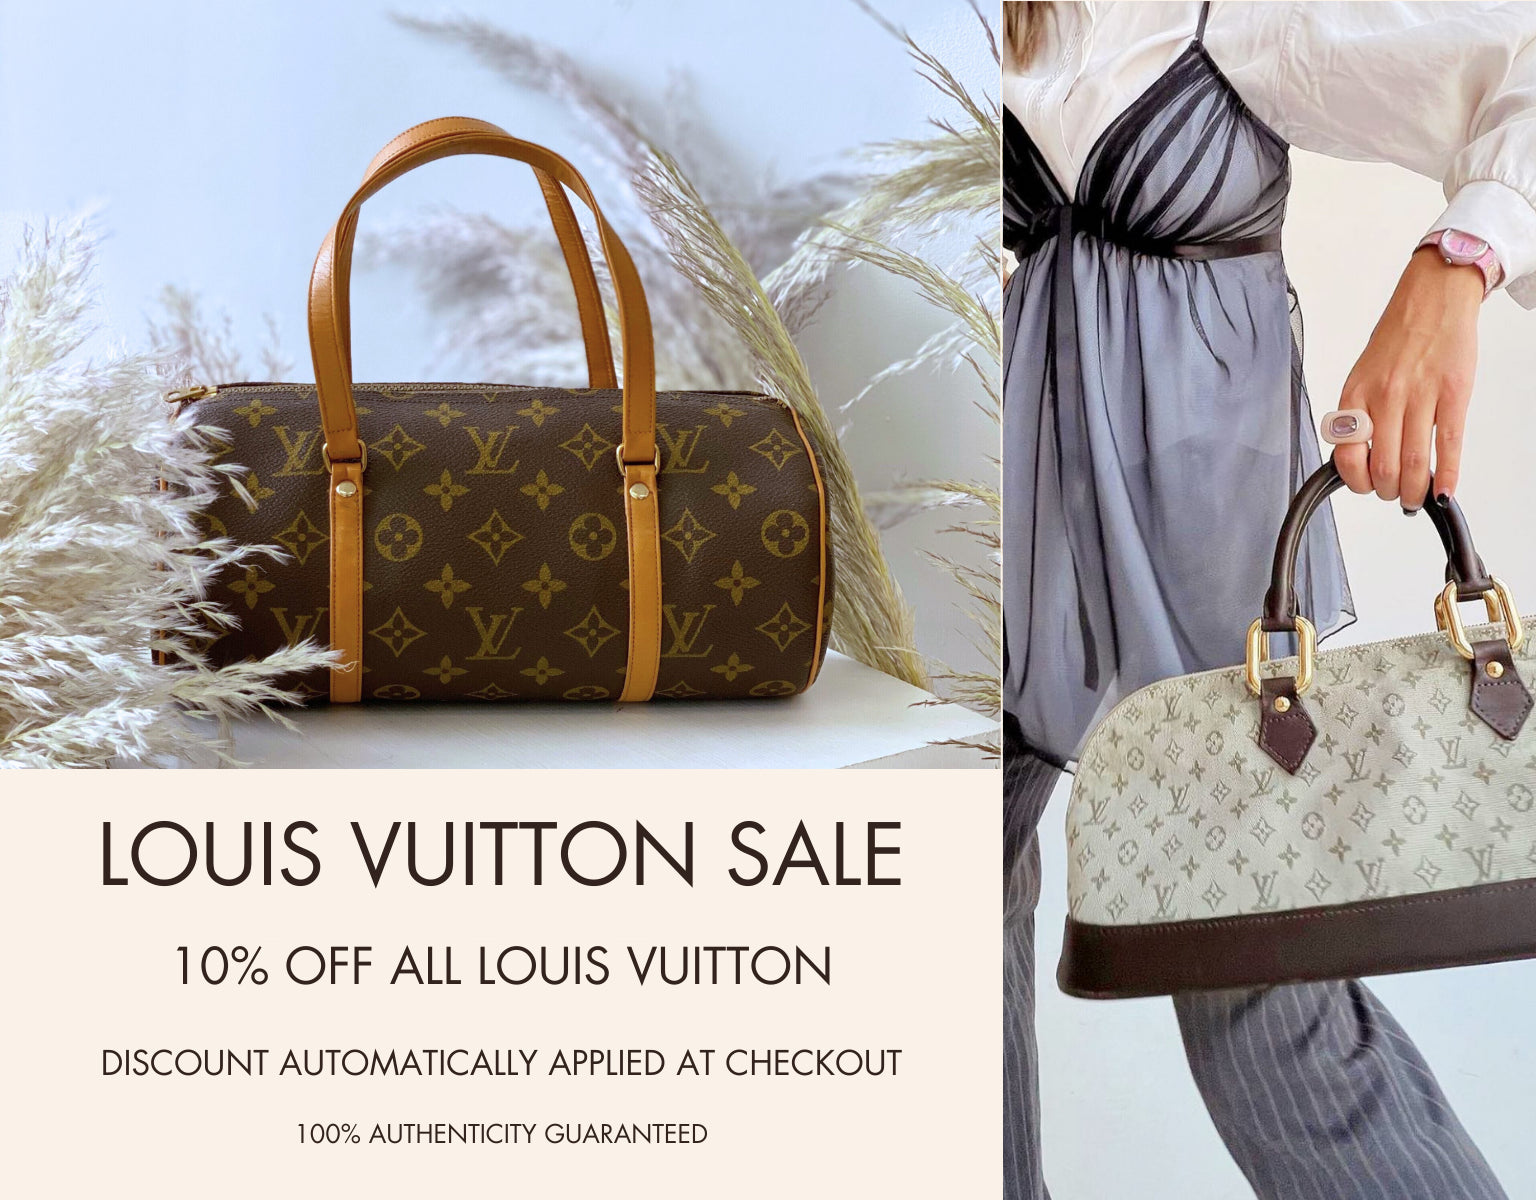 My Louis Vuitton Favorites PART 1